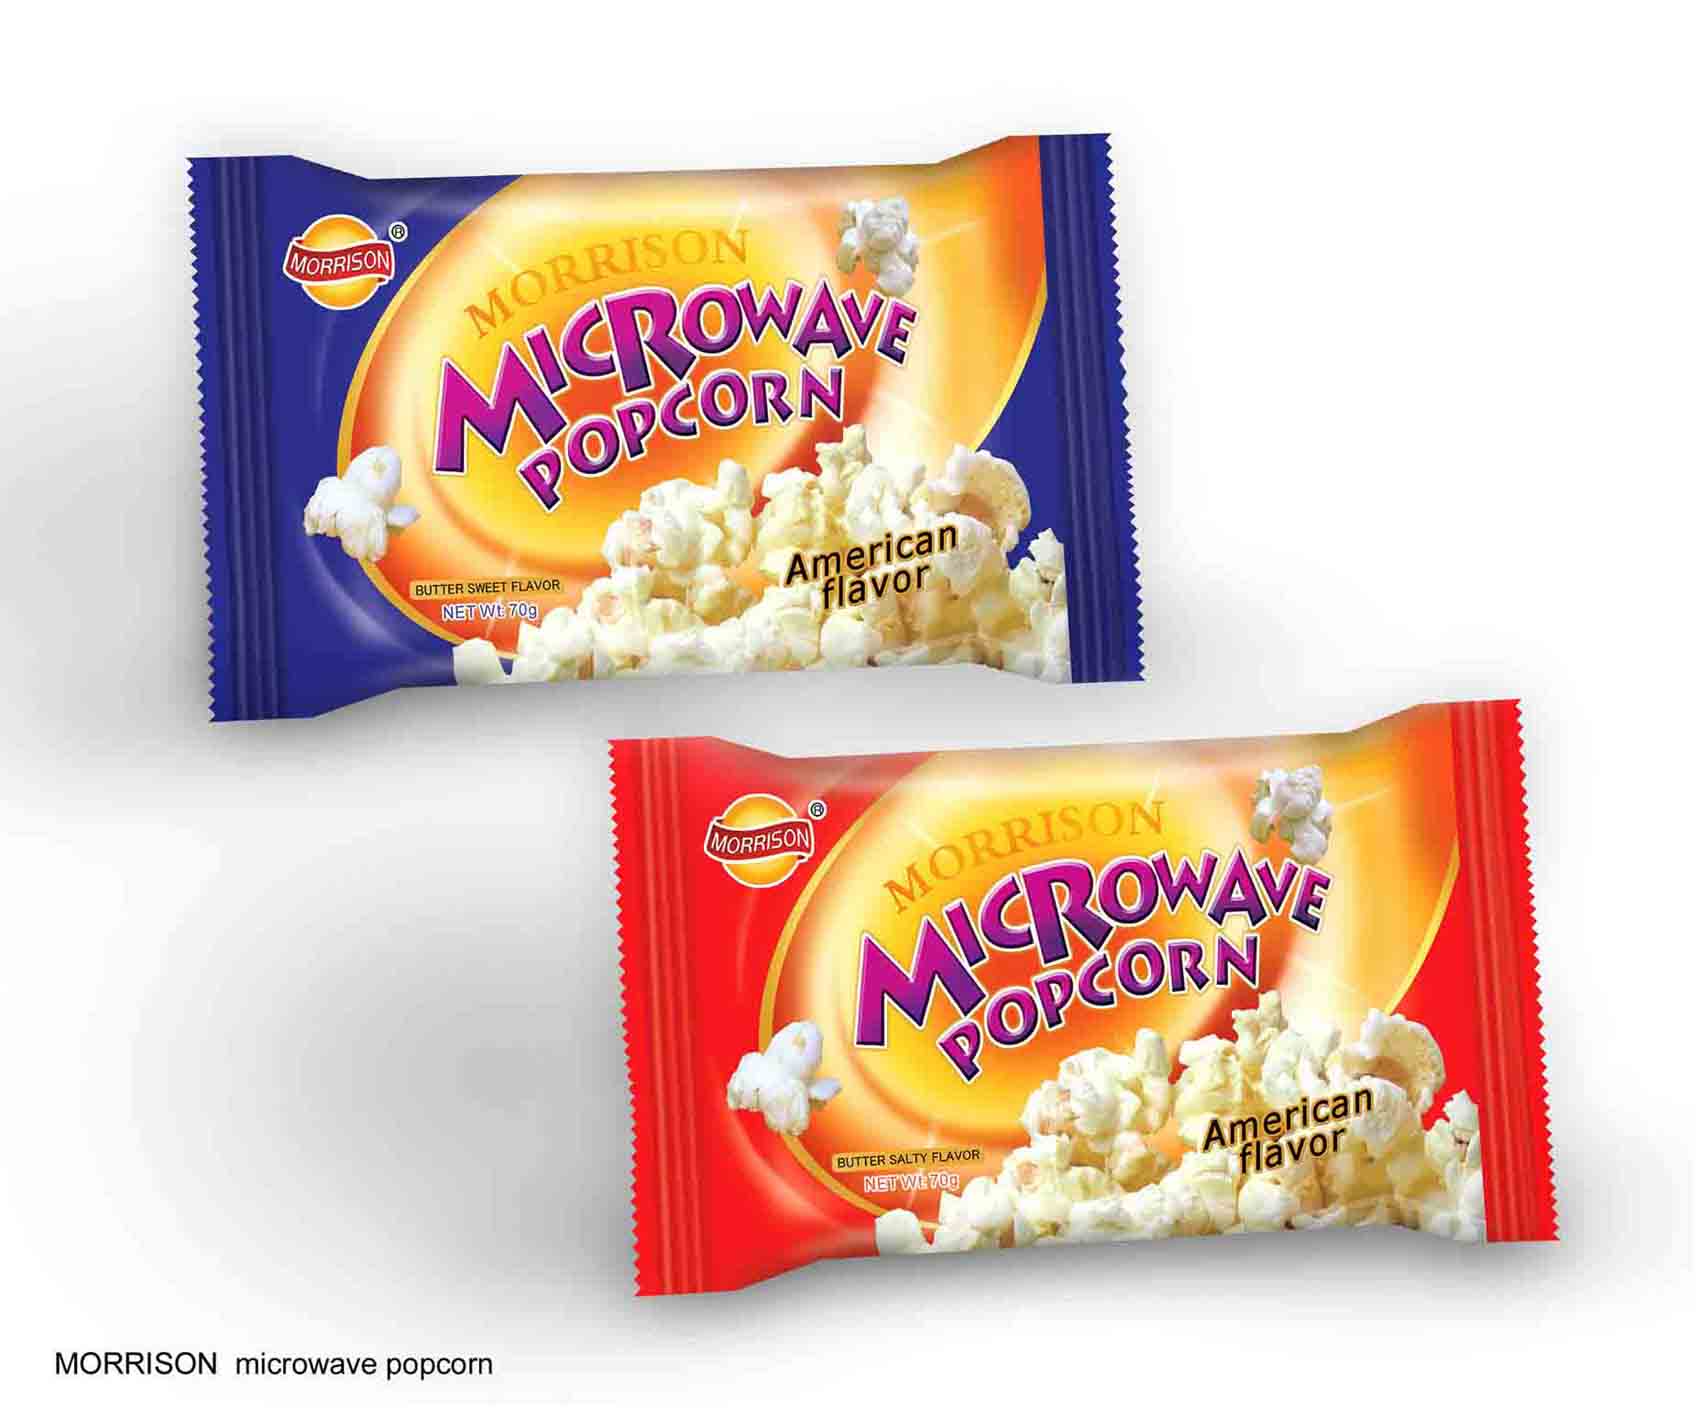  Microwave Popcorn (Микроволнового попкорна)